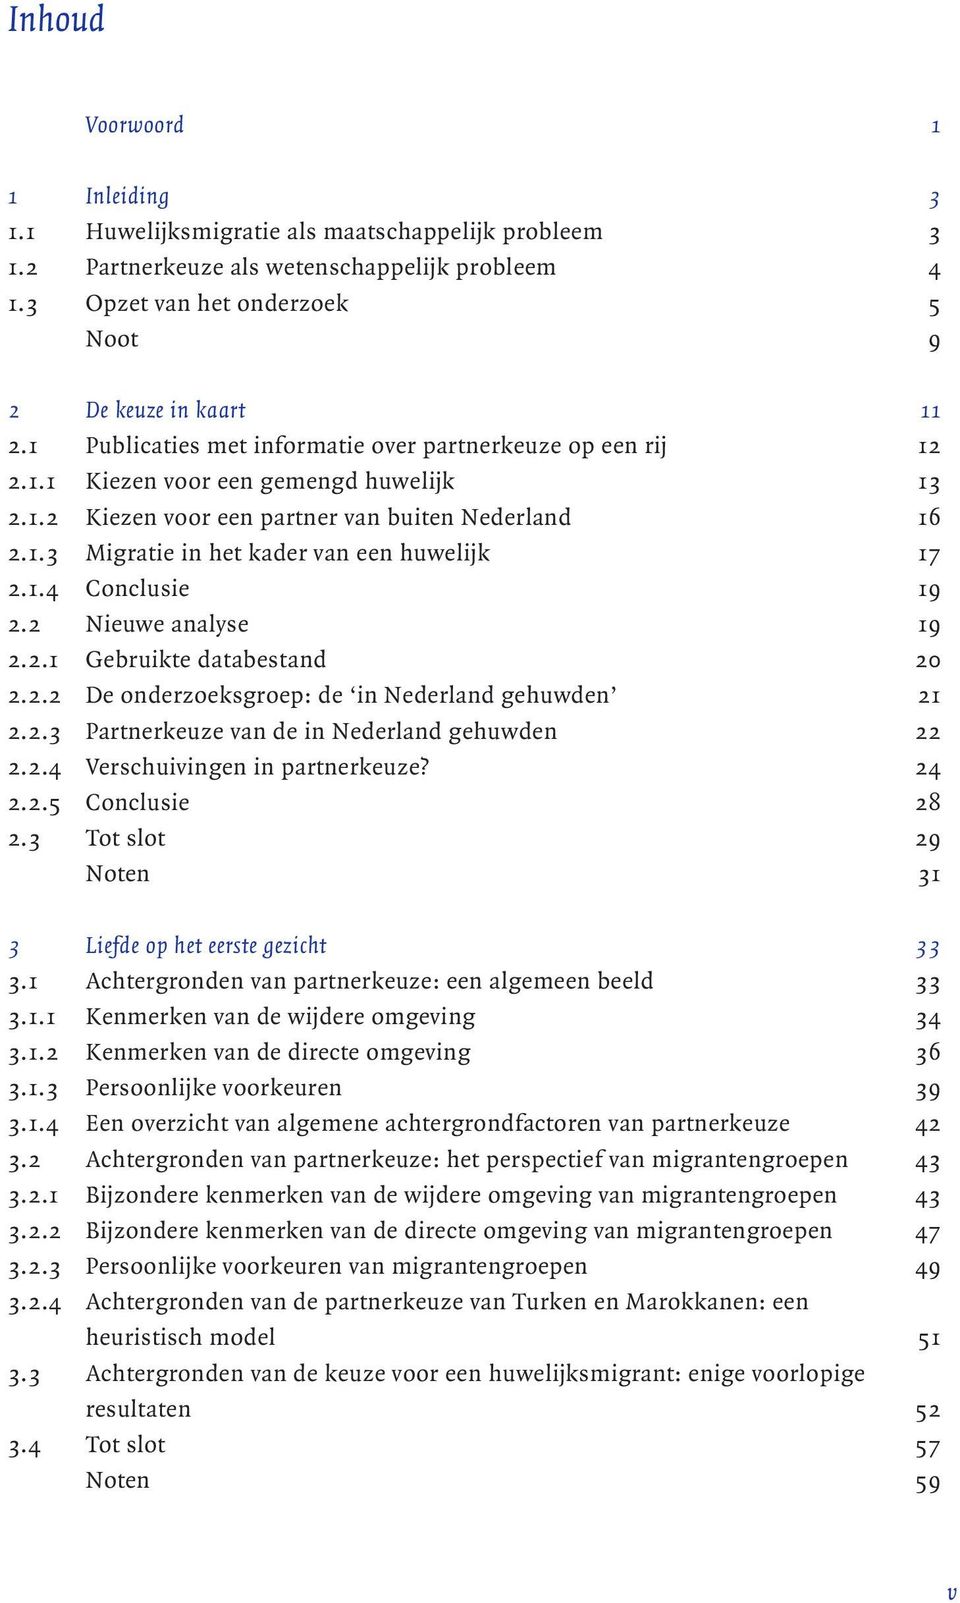 1.4 Conclusie 19 2.2 Nieuwe analyse 19 2.2.1 Gebruikte databestand 20 2.2.2 De onderzoeksgroep: de in Nederland gehuwden 21 2.2.3 Partnerkeuze van de in Nederland gehuwden 22 2.2.4 Verschuivingen in partnerkeuze?